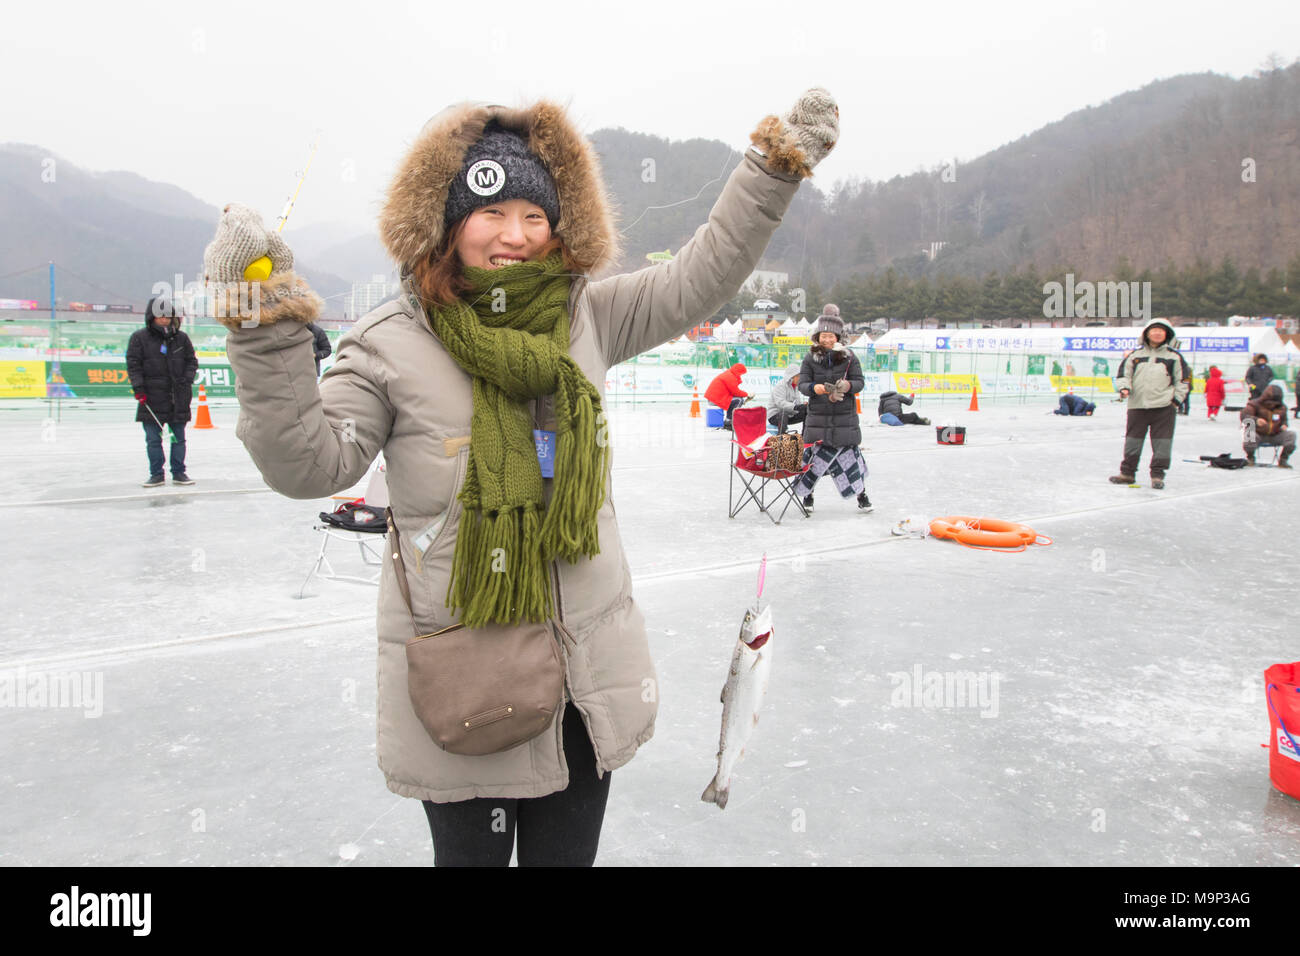 Una donna felicemente mostra un pesce ha catturati durante la pesca sul ghiaccio festival presso Hwacheon Sancheoneo nella regione del Gangwon-do di Corea del Sud. Il Hwacheon Sancheoneo Festival di ghiaccio è una tradizione per il popolo coreano. Ogni anno nel mese di gennaio la folla si riuniranno presso il fiume congelato per celebrare il freddo e la neve dell'inverno. Attrazione principale è la pesca sul ghiaccio. Giovani e vecchi attendere pazientemente su un piccolo buco nel ghiaccio per una trota di mordere. In tende possono lasciare il pesce grigliato dopo che loro sono mangiati. Tra le altre attività sono corse in slittino e pattinaggio sul ghiaccio. La vicina regione Pyeongchang ospiterà le Olimpiadi invernali Foto Stock